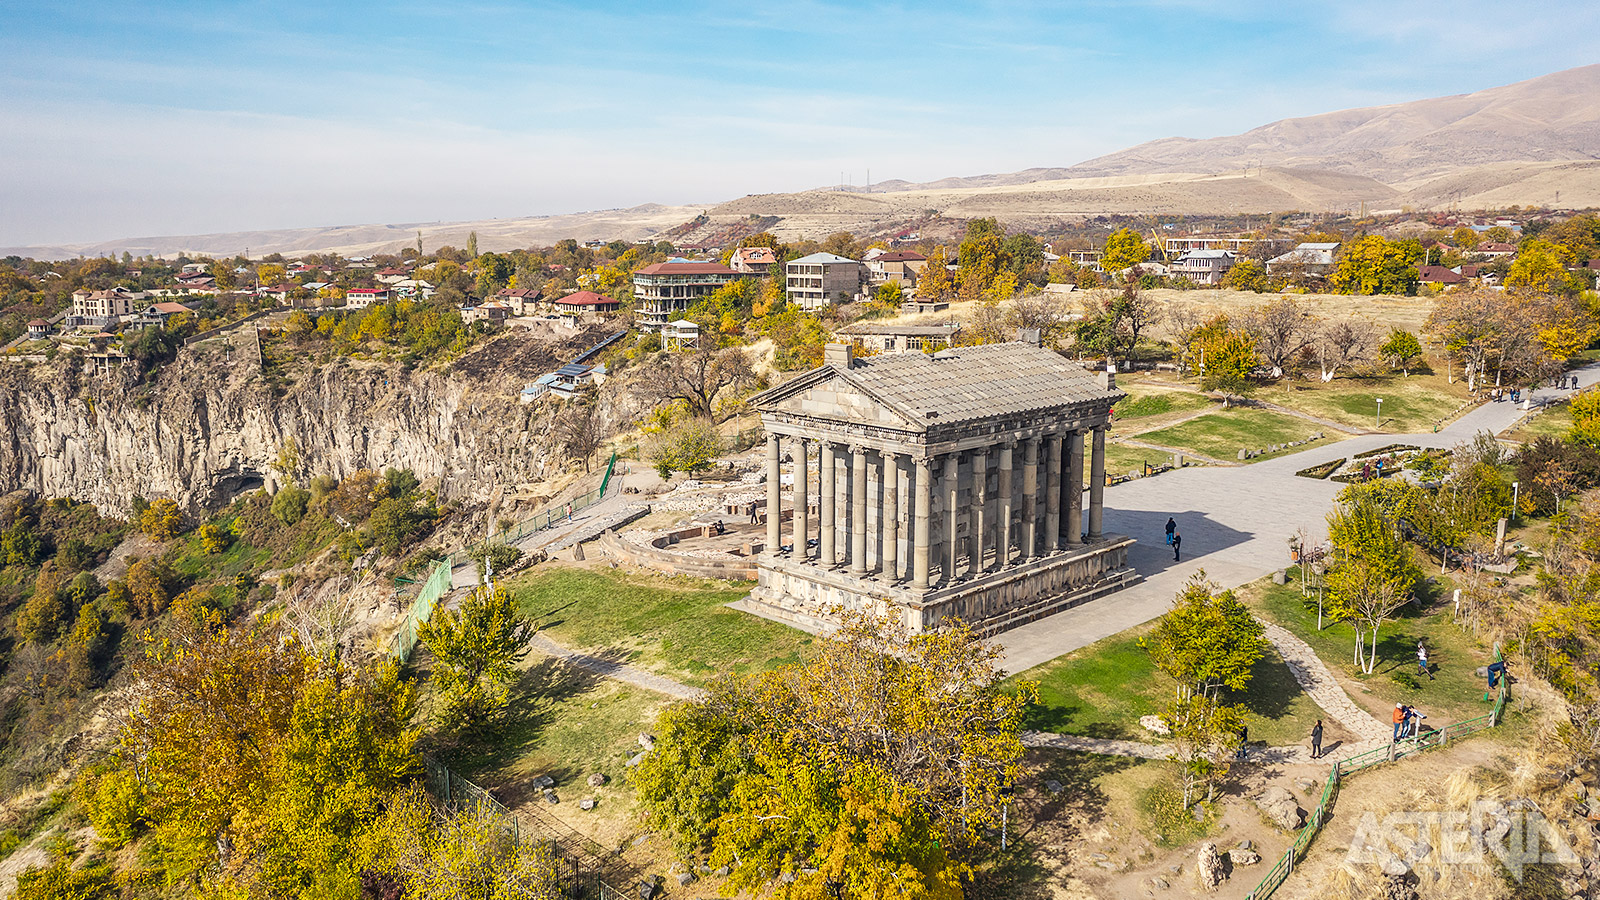 De Garni-tempel op de Romeinse site werd gebouwd door de Armeense koning Tiridate na zijn kroning door keizer Nero in Rome